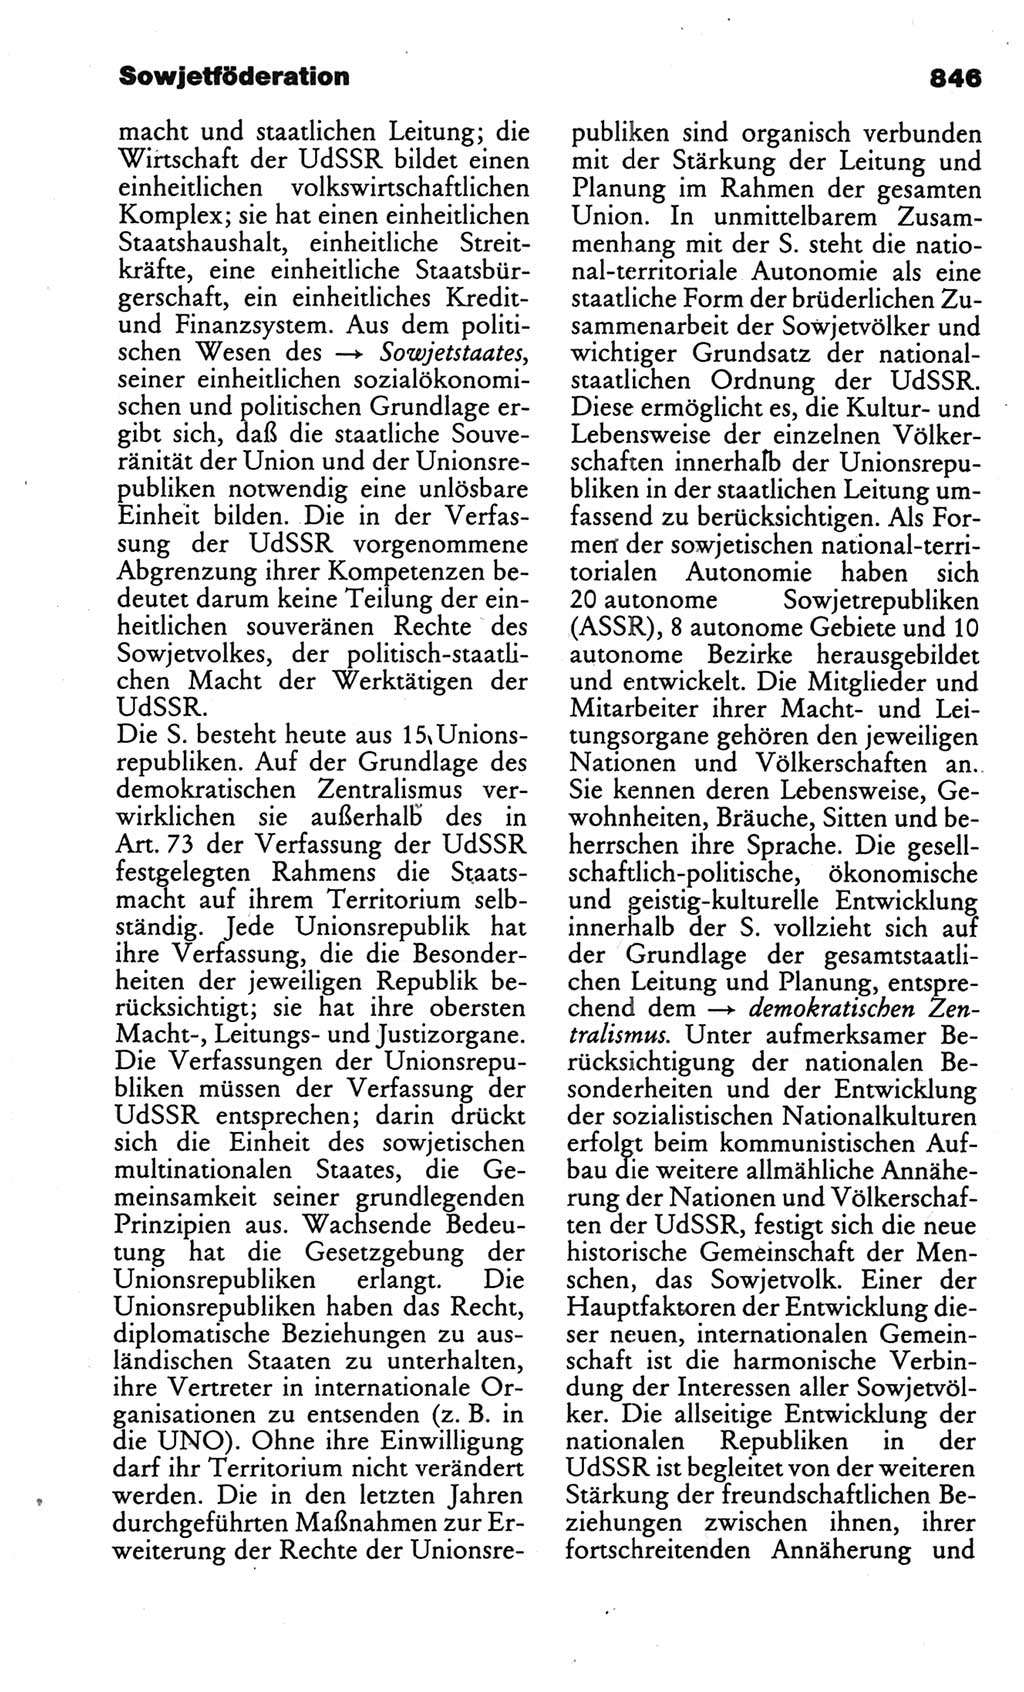 Kleines politisches Wörterbuch [Deutsche Demokratische Republik (DDR)] 1986, Seite 846 (Kl. pol. Wb. DDR 1986, S. 846)